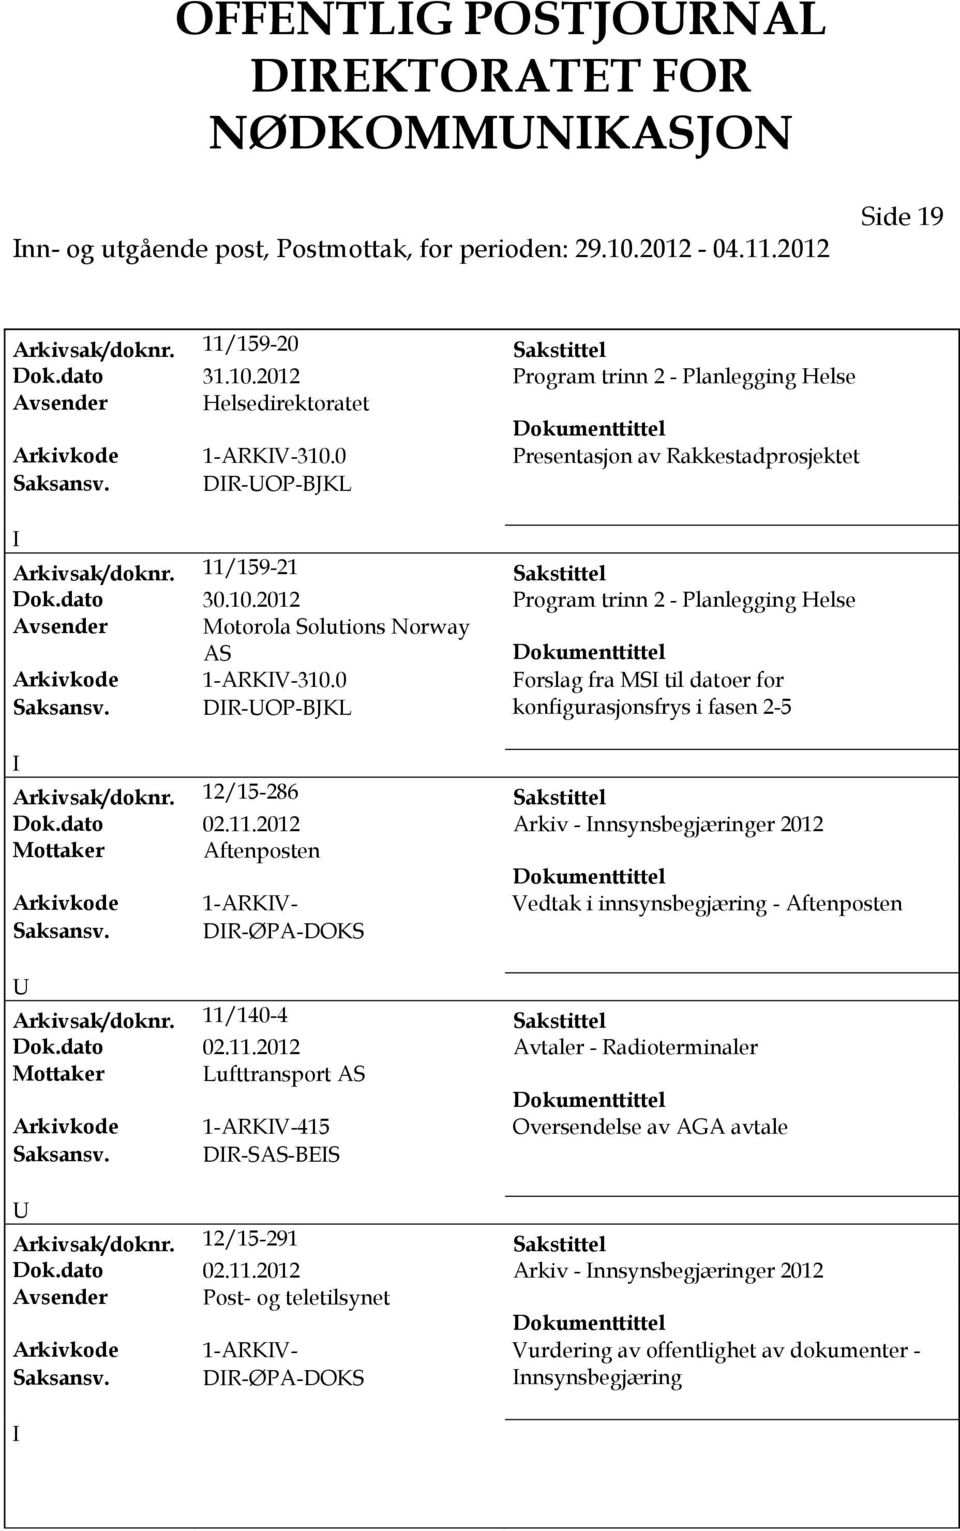 2012 Program trinn 2 - Planlegging Helse Avsender Motorola Solutions Norway Arkivkode 1-ARKV-310.0 Forslag fra MS til datoer for Saksansv. DR-OP-BJKL konfigurasjonsfrys i fasen 2-5 Arkivsak/doknr.